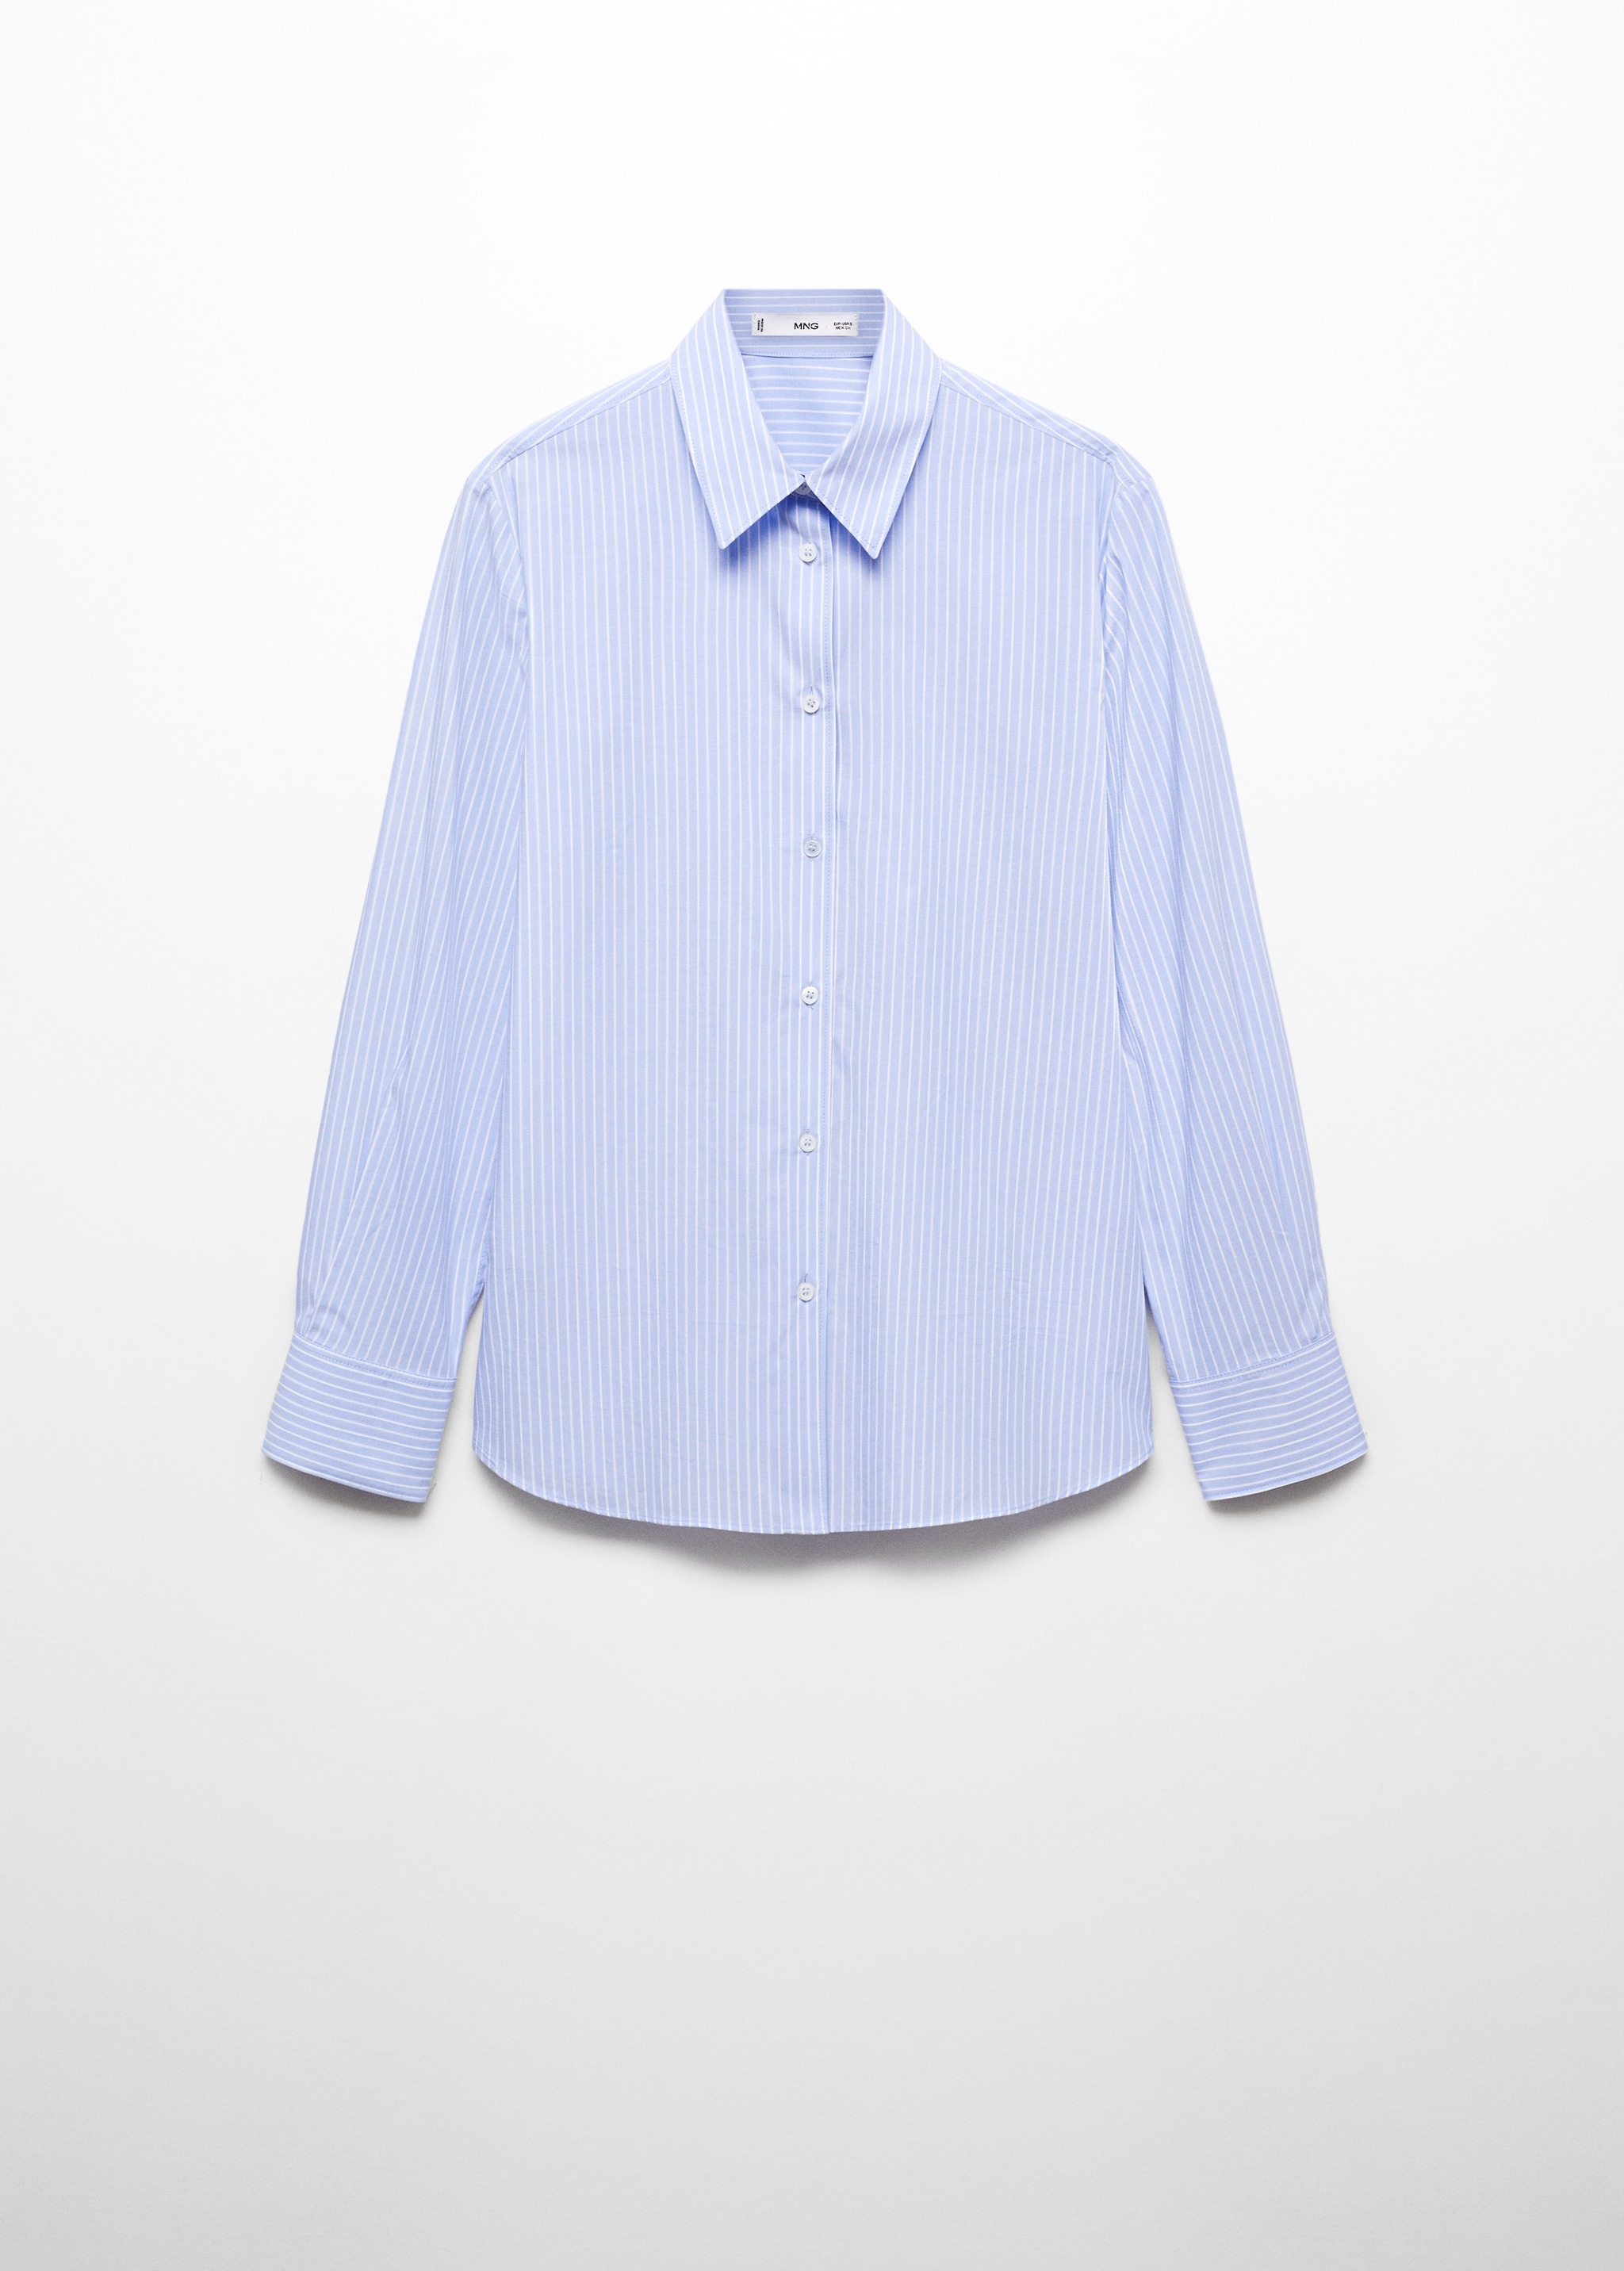 Camisa regular fit com mistura de algodão e liocel - Artigo sem modelo